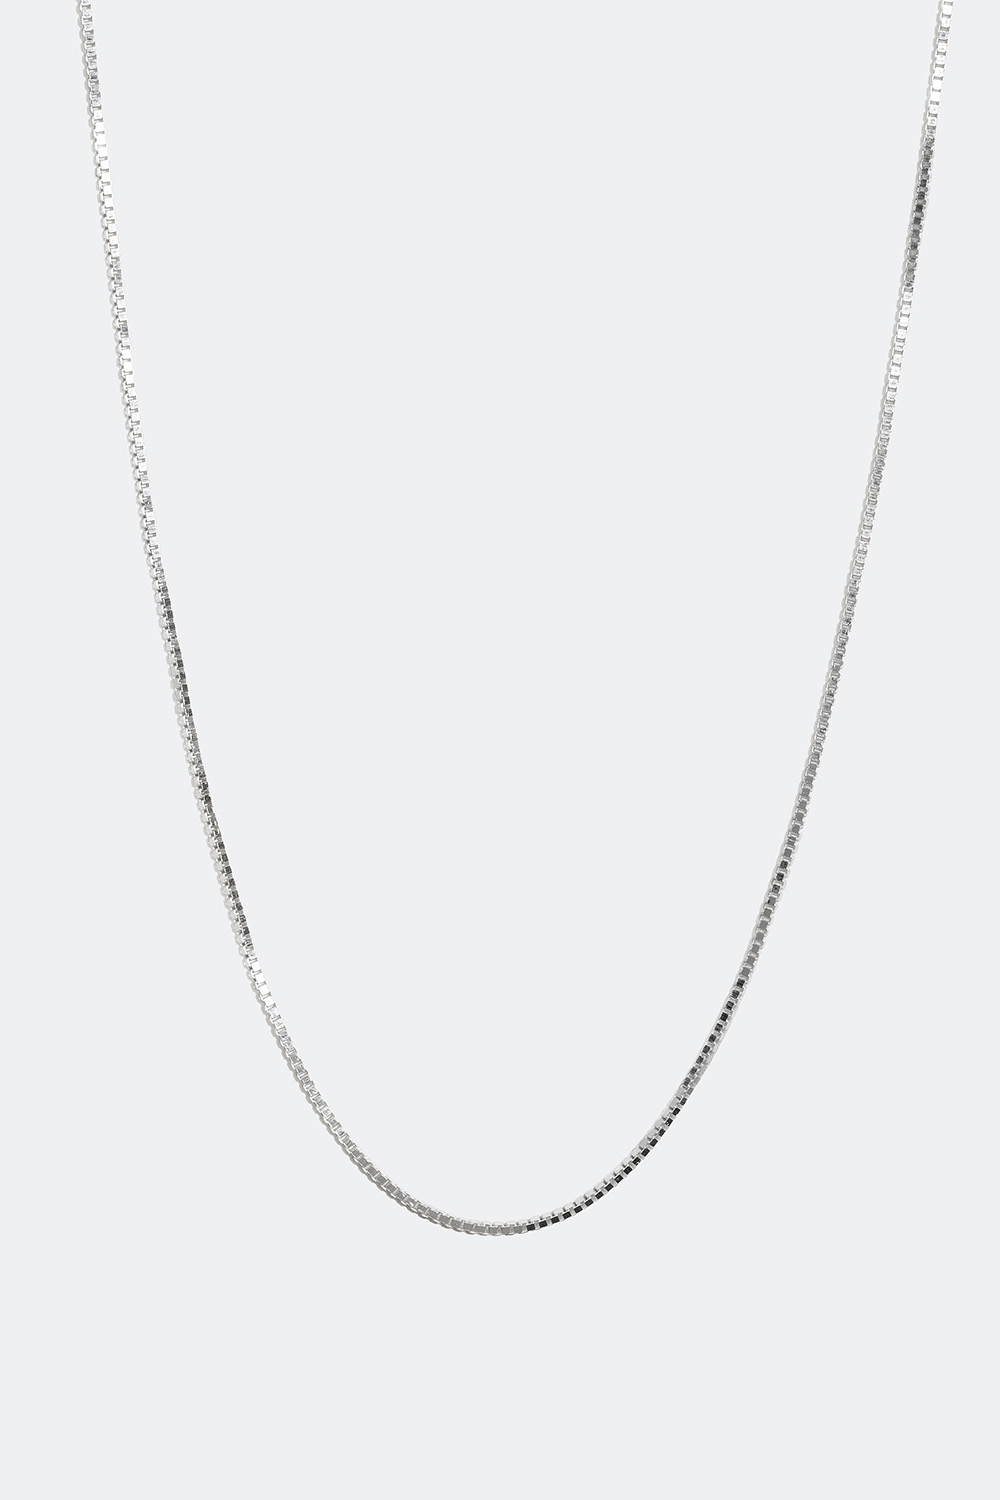 Venetiansk halskedja i äkta silver, 45 cm i gruppen Äkta silver / Silverhalsband / Halskedjor i äkta silver hos Glitter (554000211000)